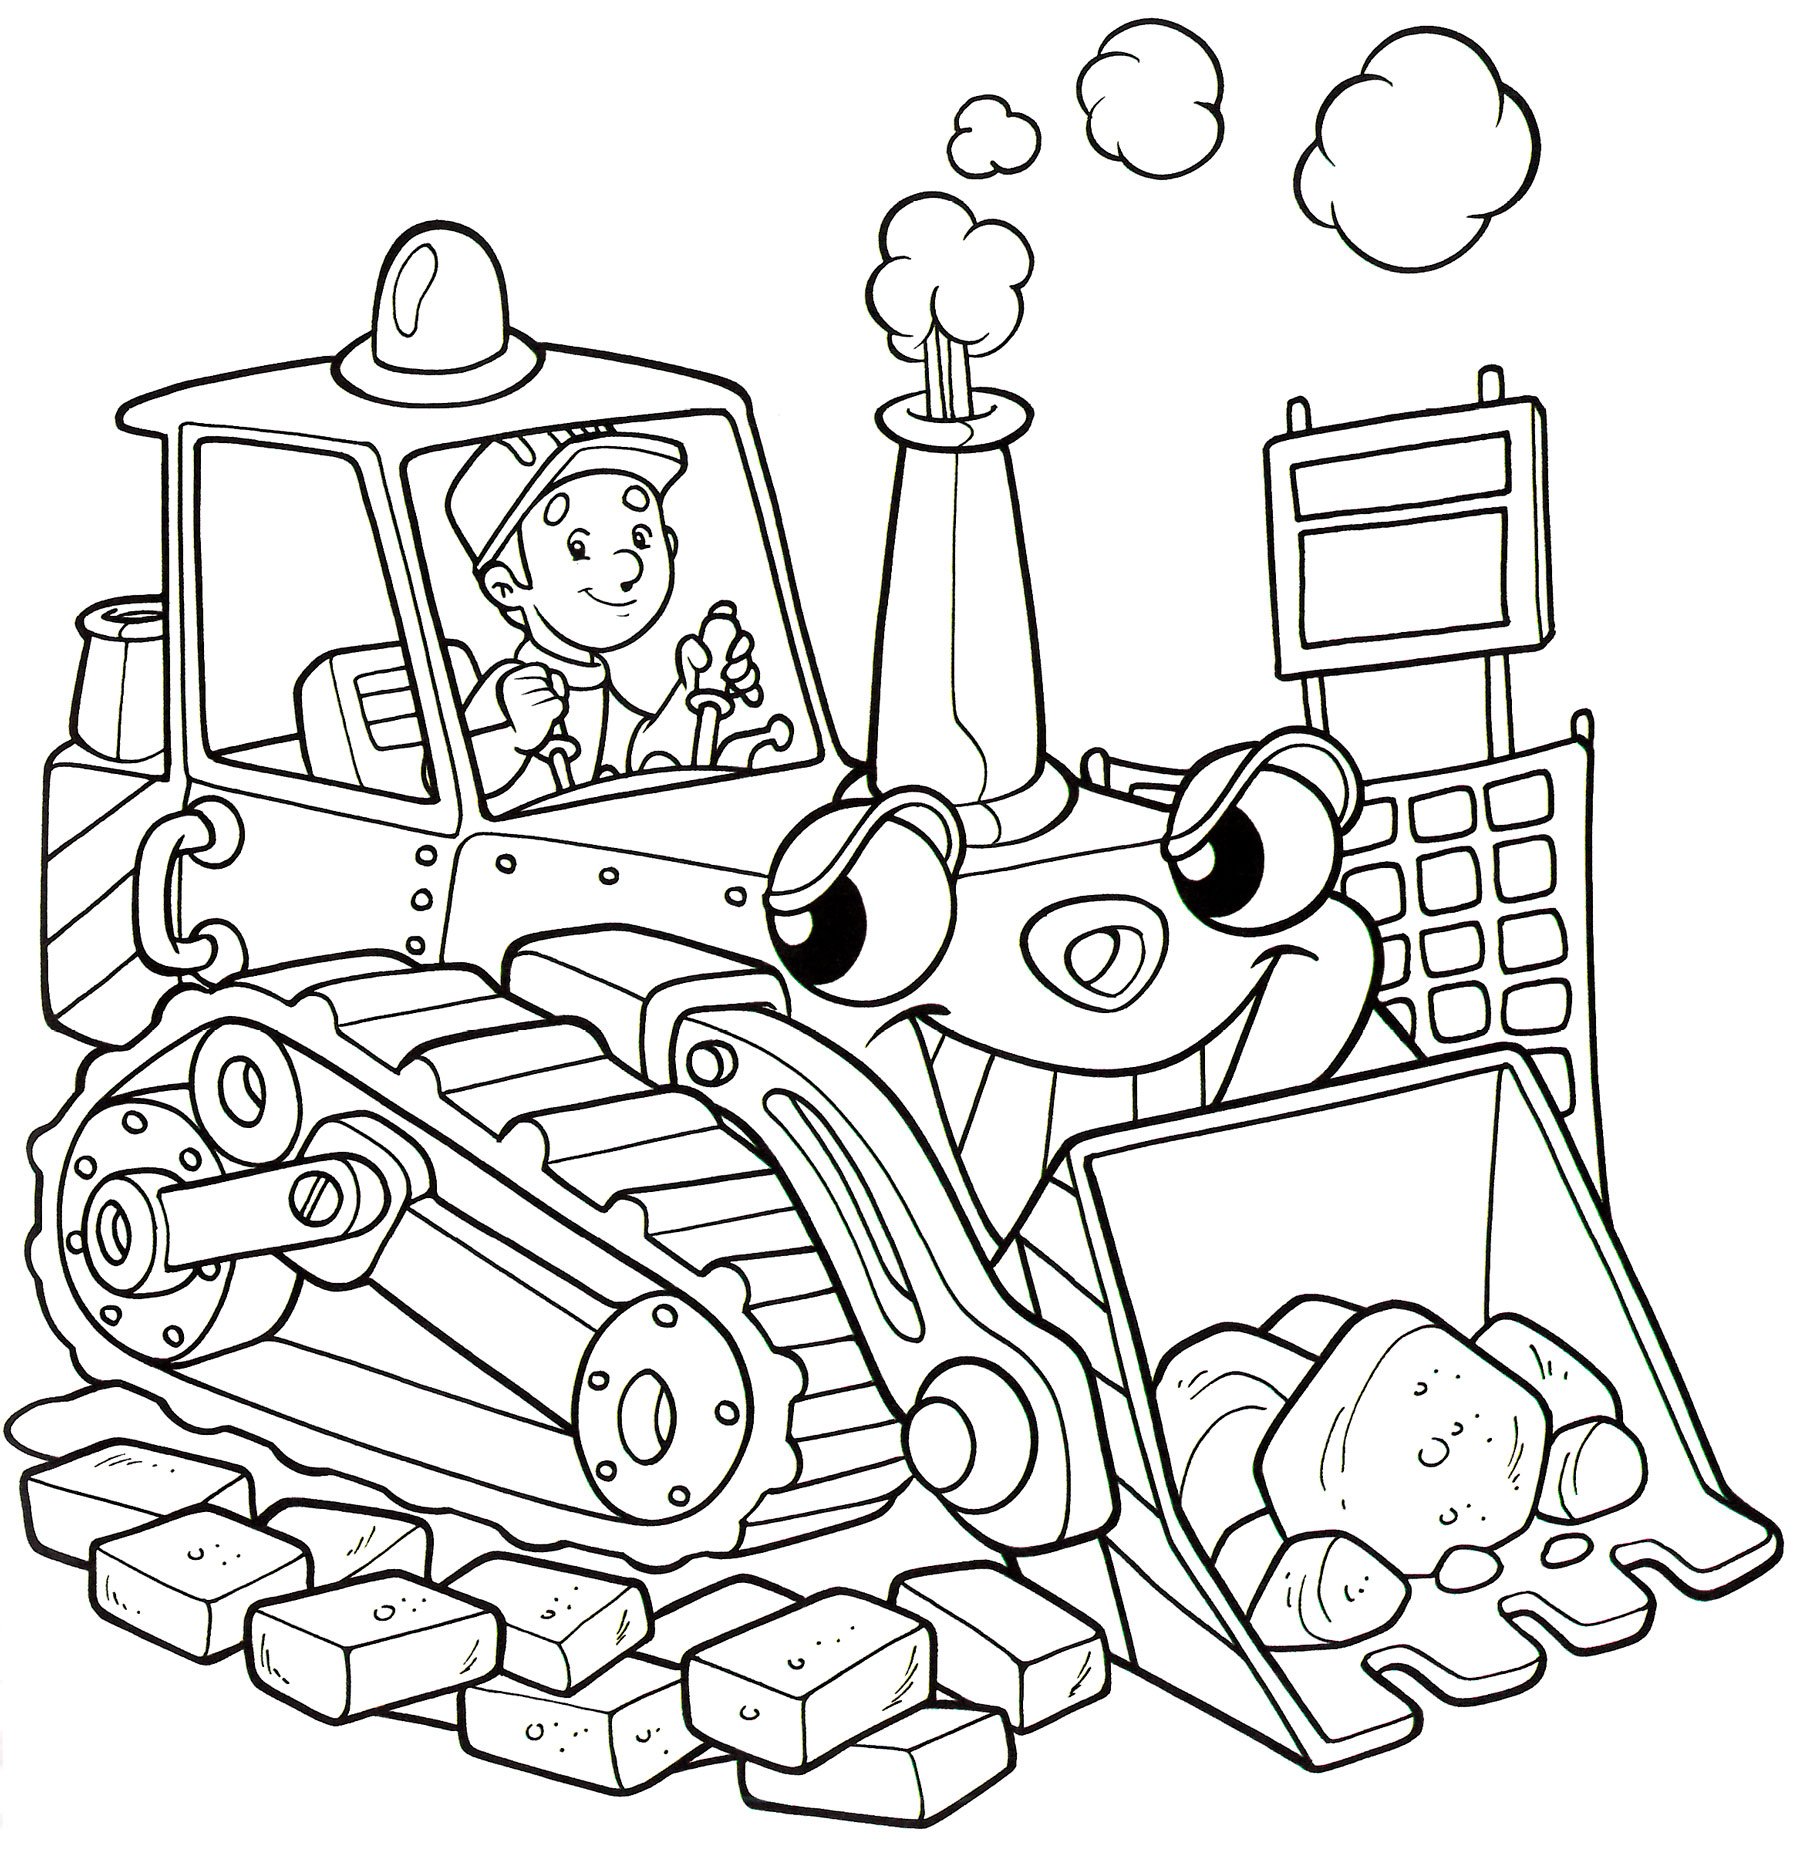 Раскраска про машинки: Грузовичок Лева и Трактор: цвета для детей